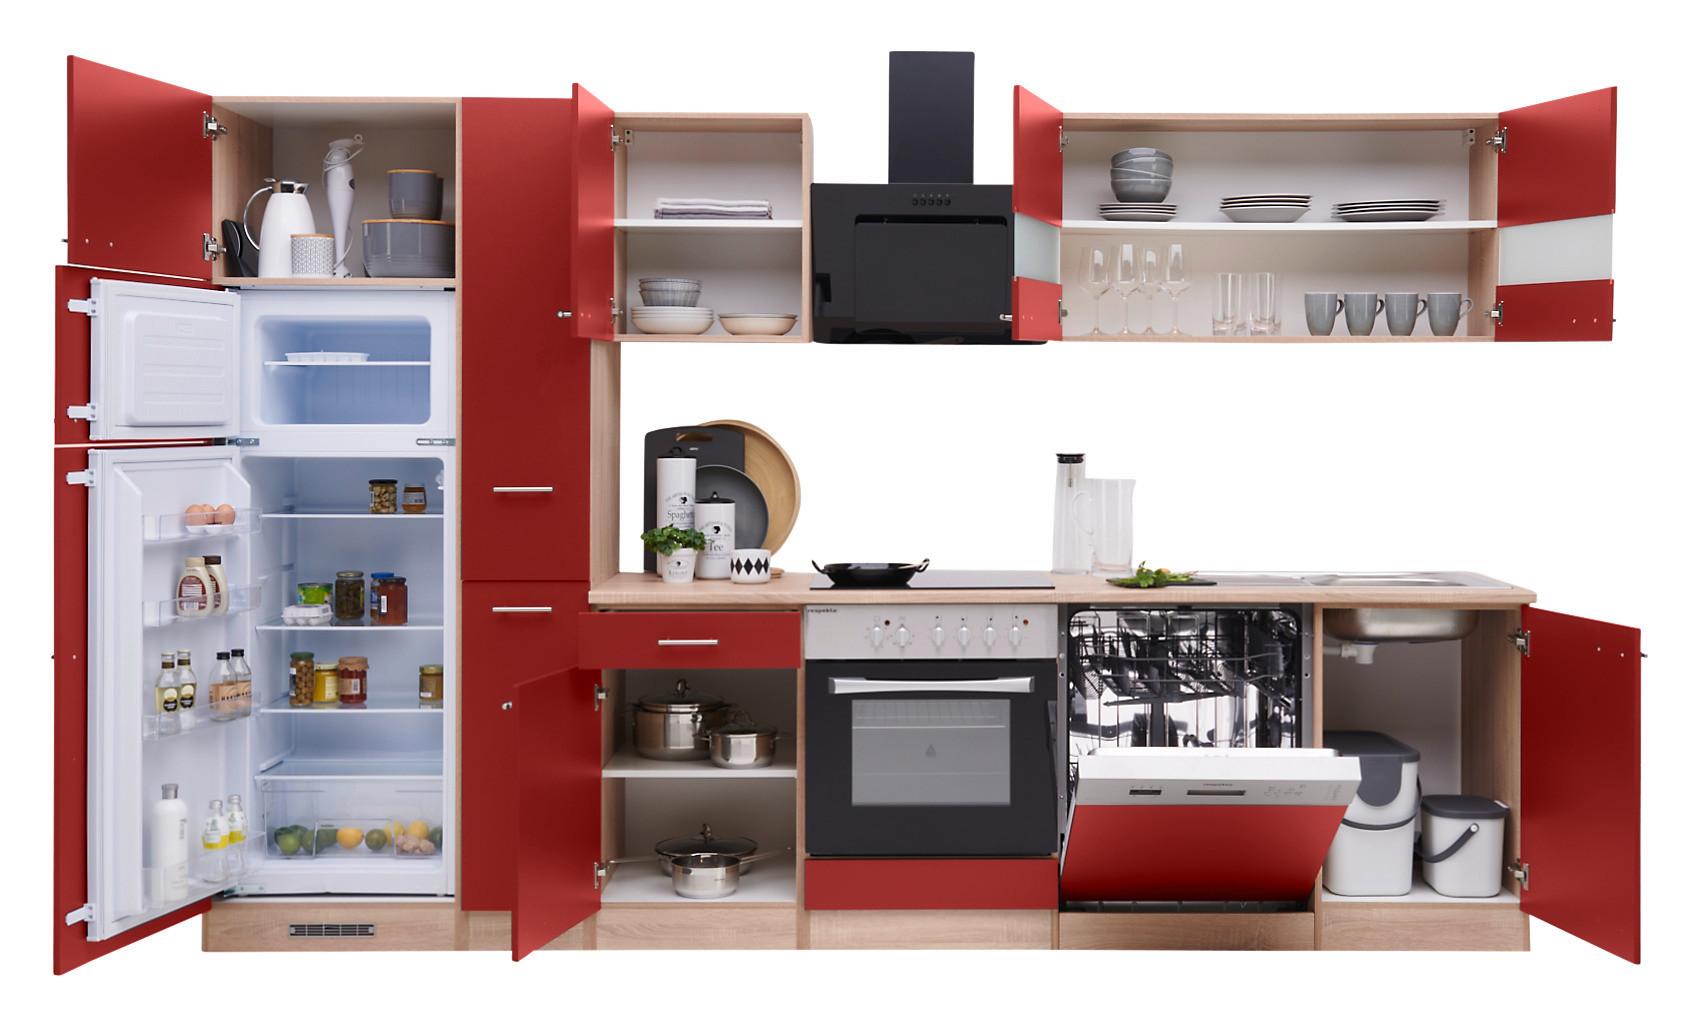 Küchenzeile Economy mit Geräten 310 cm Rot/Eiche Dekor Modern - Eichefarben/Rot, Basics, Holzwerkstoff (310cm) - Respekta